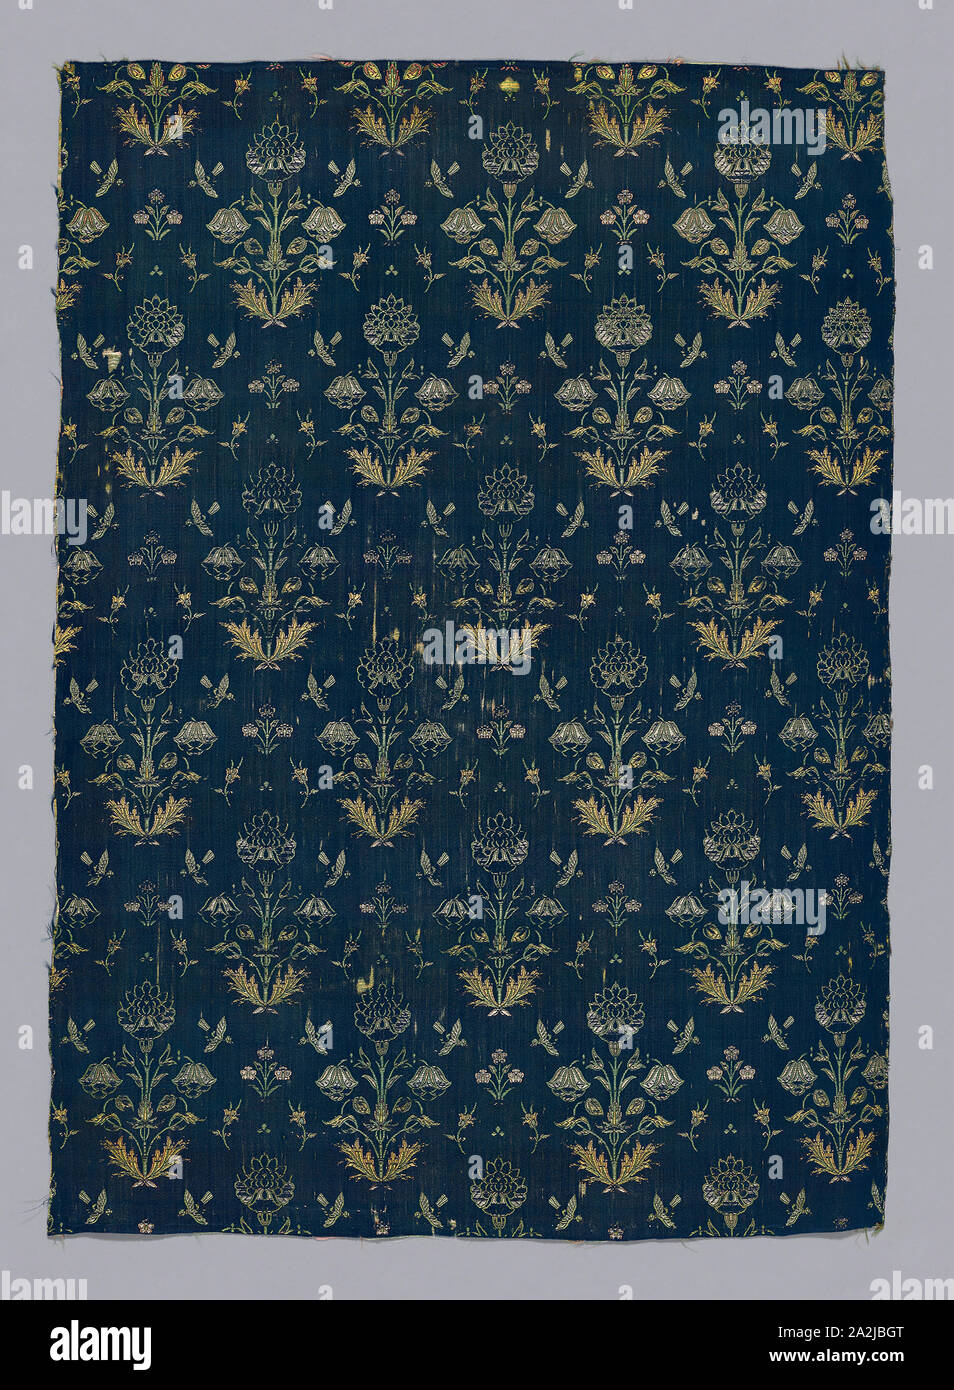 Fragment (Kleid Stoff), 18. Jahrhundert, Iran, wahrscheinlich Kashan, Iran, Seide, Satin weben mit sekundären Bindung Warps und Selbst - Musterung Tressen, 58,42 x 41.91 cm (23 x 16 1/2 in. Stockfoto